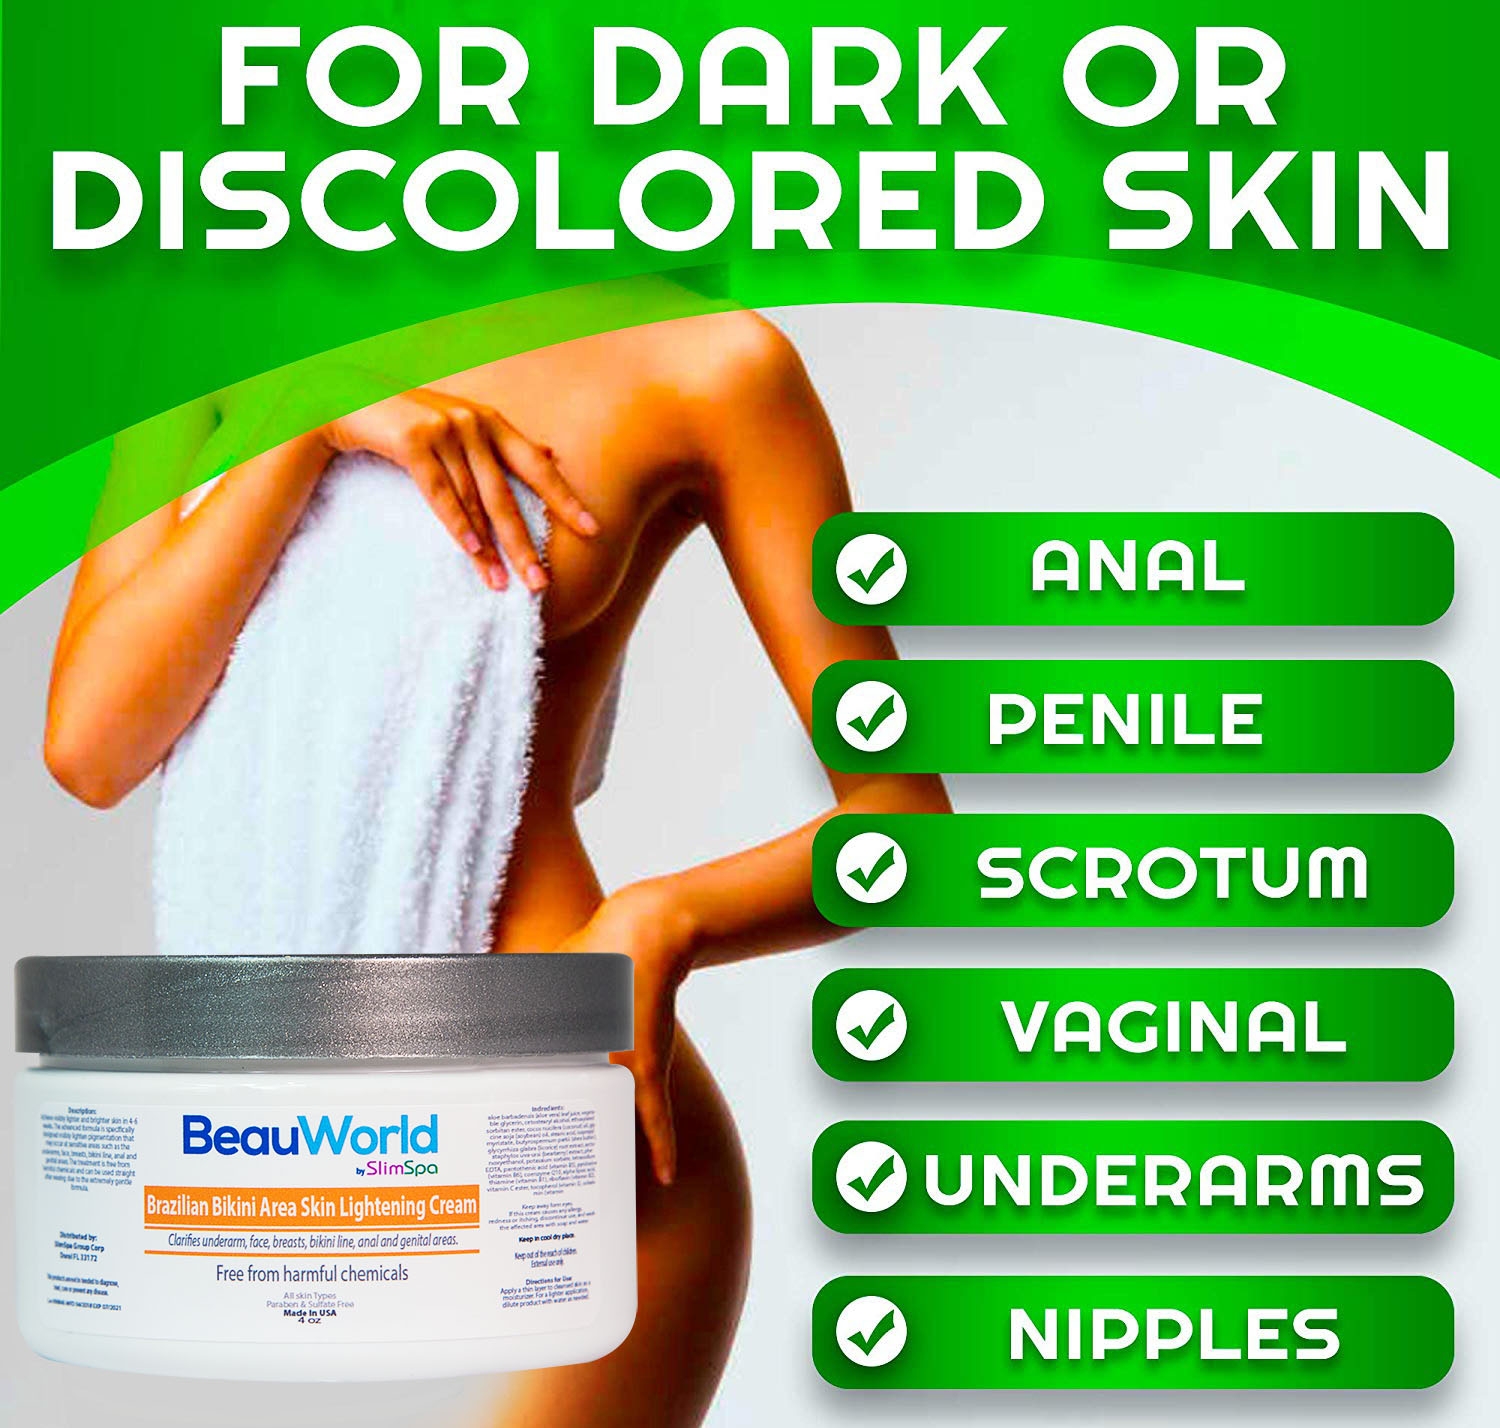  Intimate Area Skin Lightening Cream, Skin Bleaching